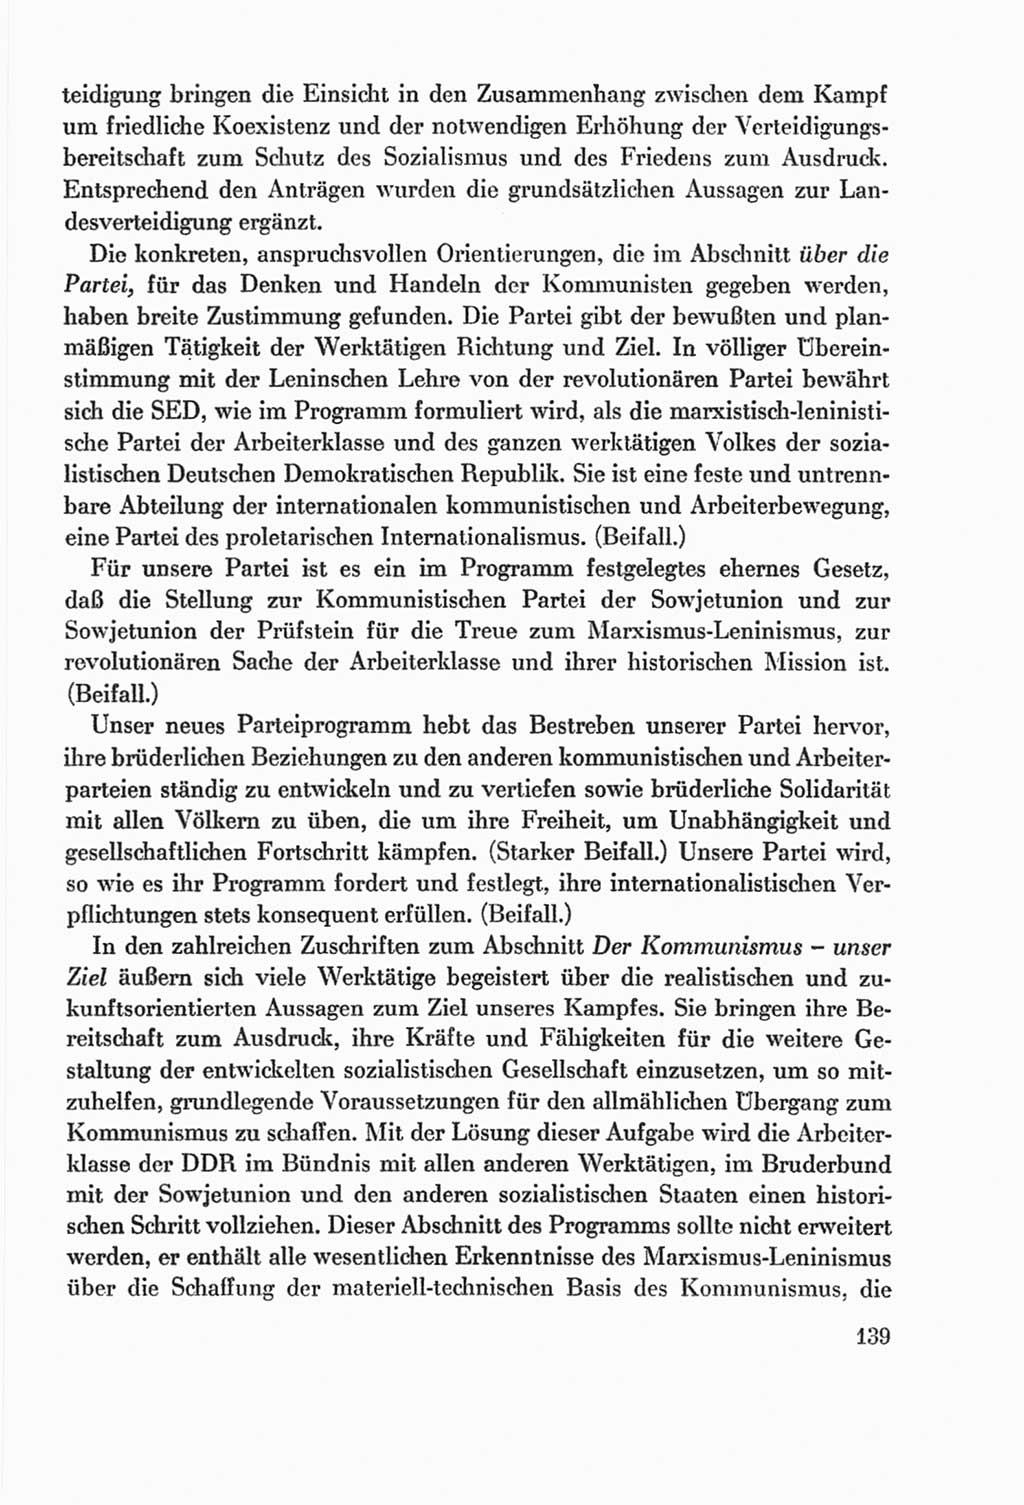 Protokoll der Verhandlungen des Ⅸ. Parteitages der Sozialistischen Einheitspartei Deutschlands (SED) [Deutsche Demokratische Republik (DDR)] 1976, Band 2, Seite 139 (Prot. Verh. Ⅸ. PT SED DDR 1976, Bd. 2, S. 139)